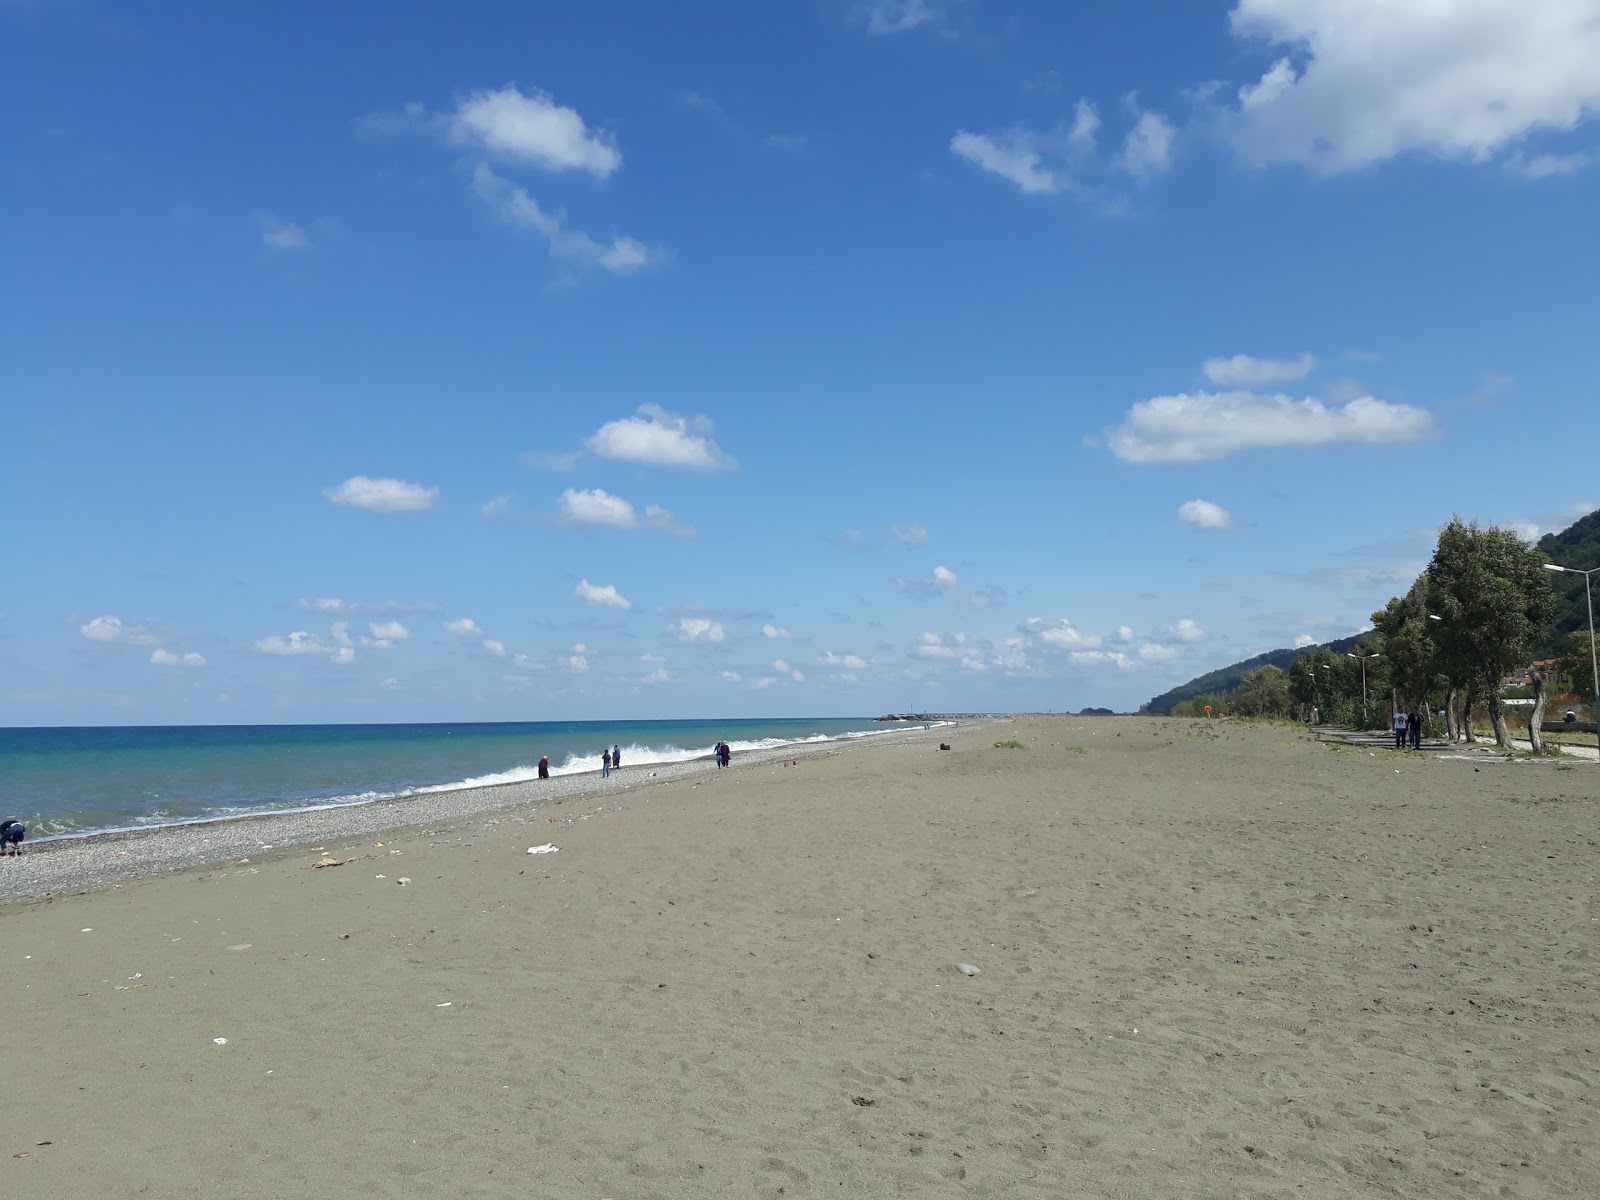 Foto de Cocuk Bahces Beach - lugar popular entre os apreciadores de relaxamento